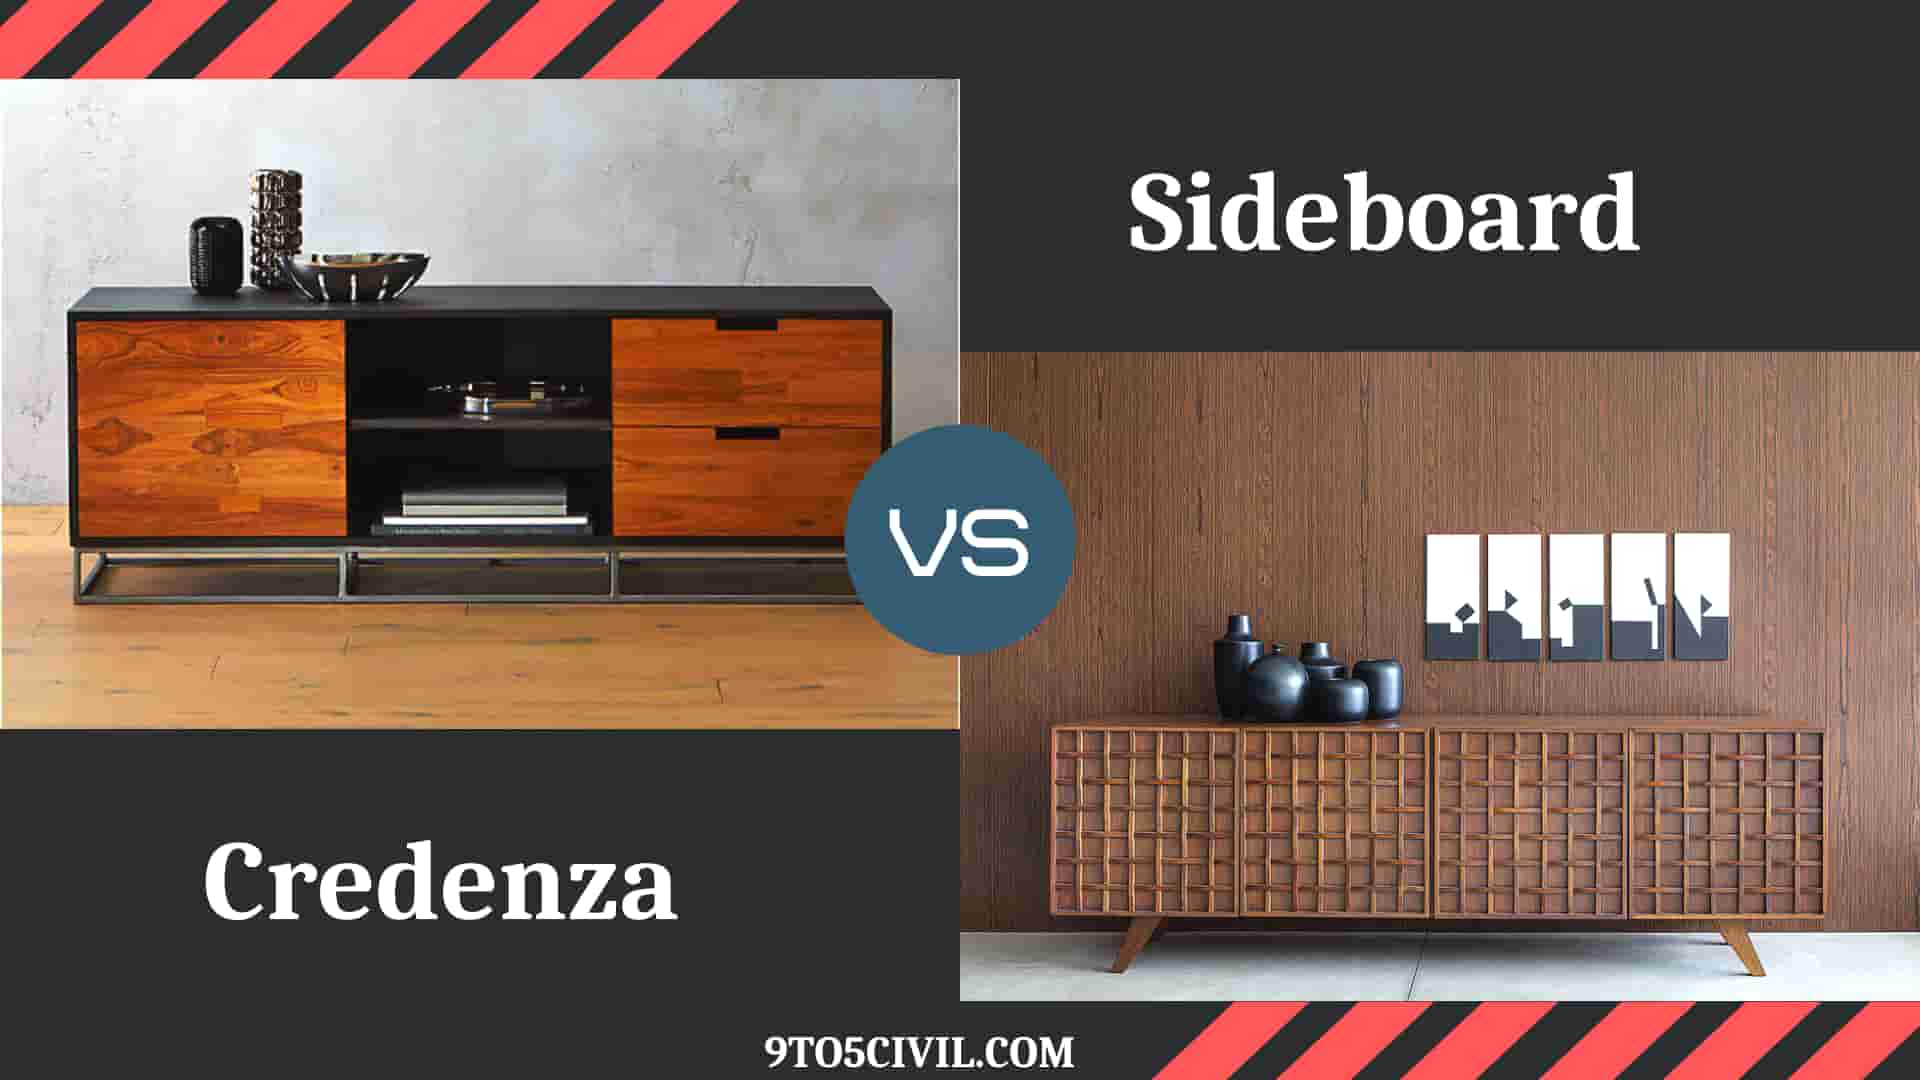 Credenza Vs Sideboard